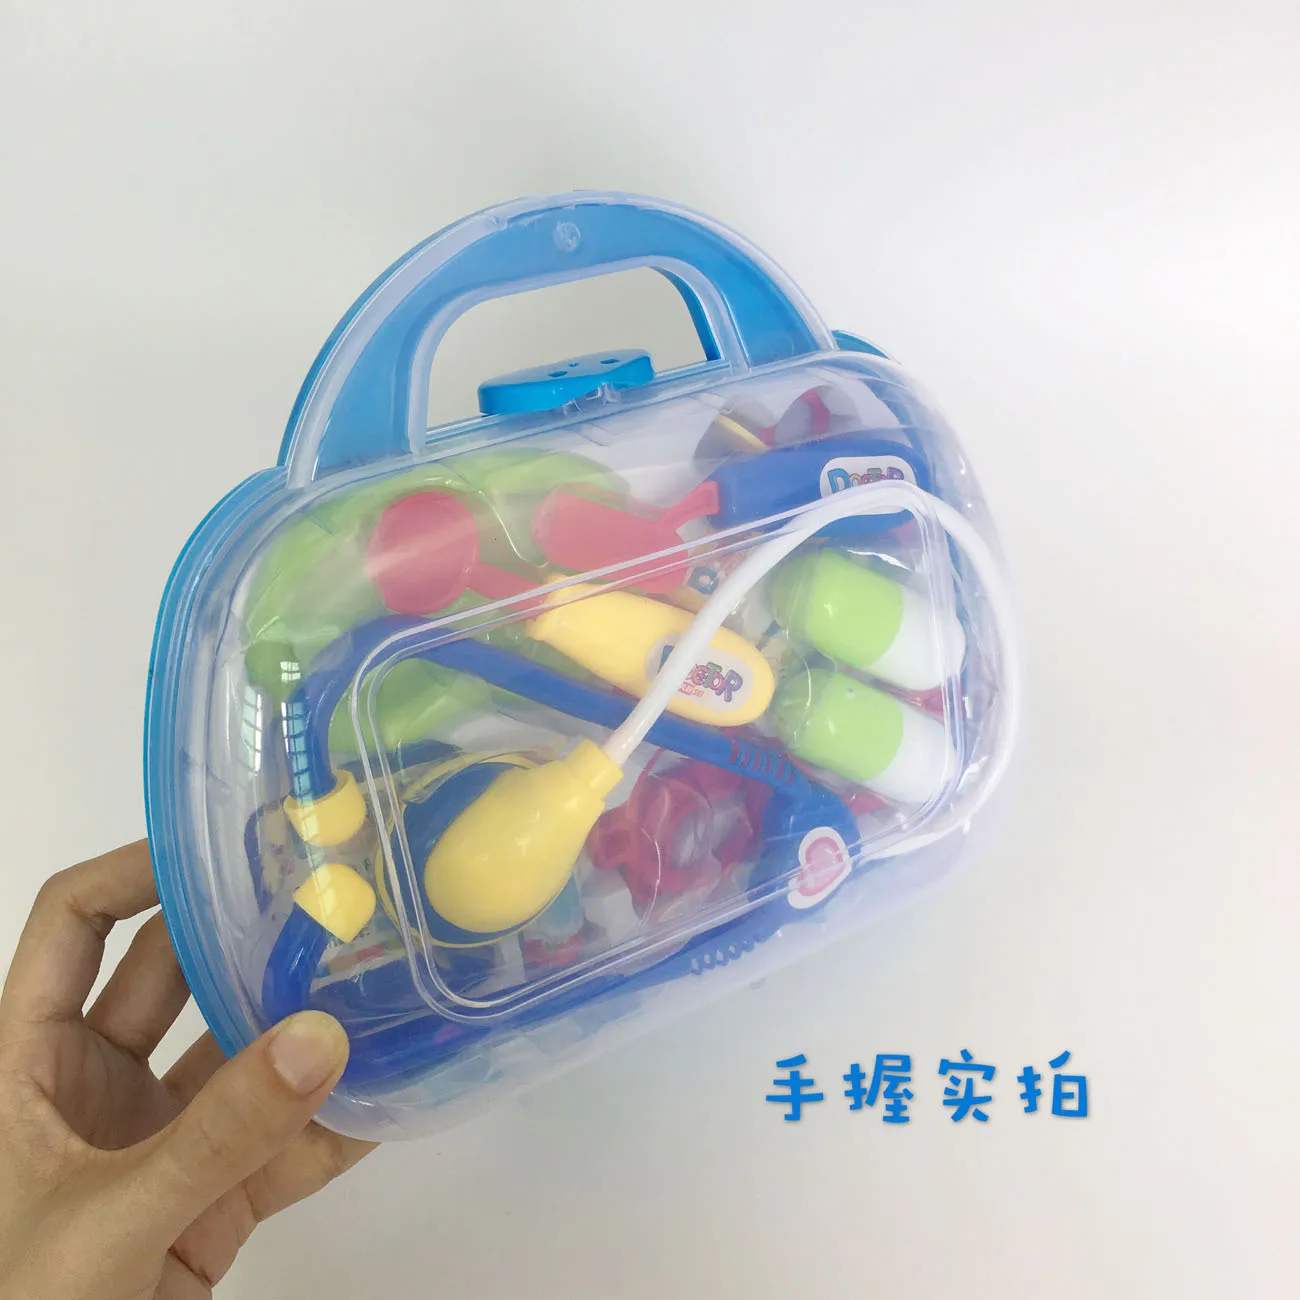 Chenghai напрямую от производителя, интерактивных детских игровых домиков игрушка «Доктор» игрушечный набор врача 11 шт. портативная коробка Play Syri